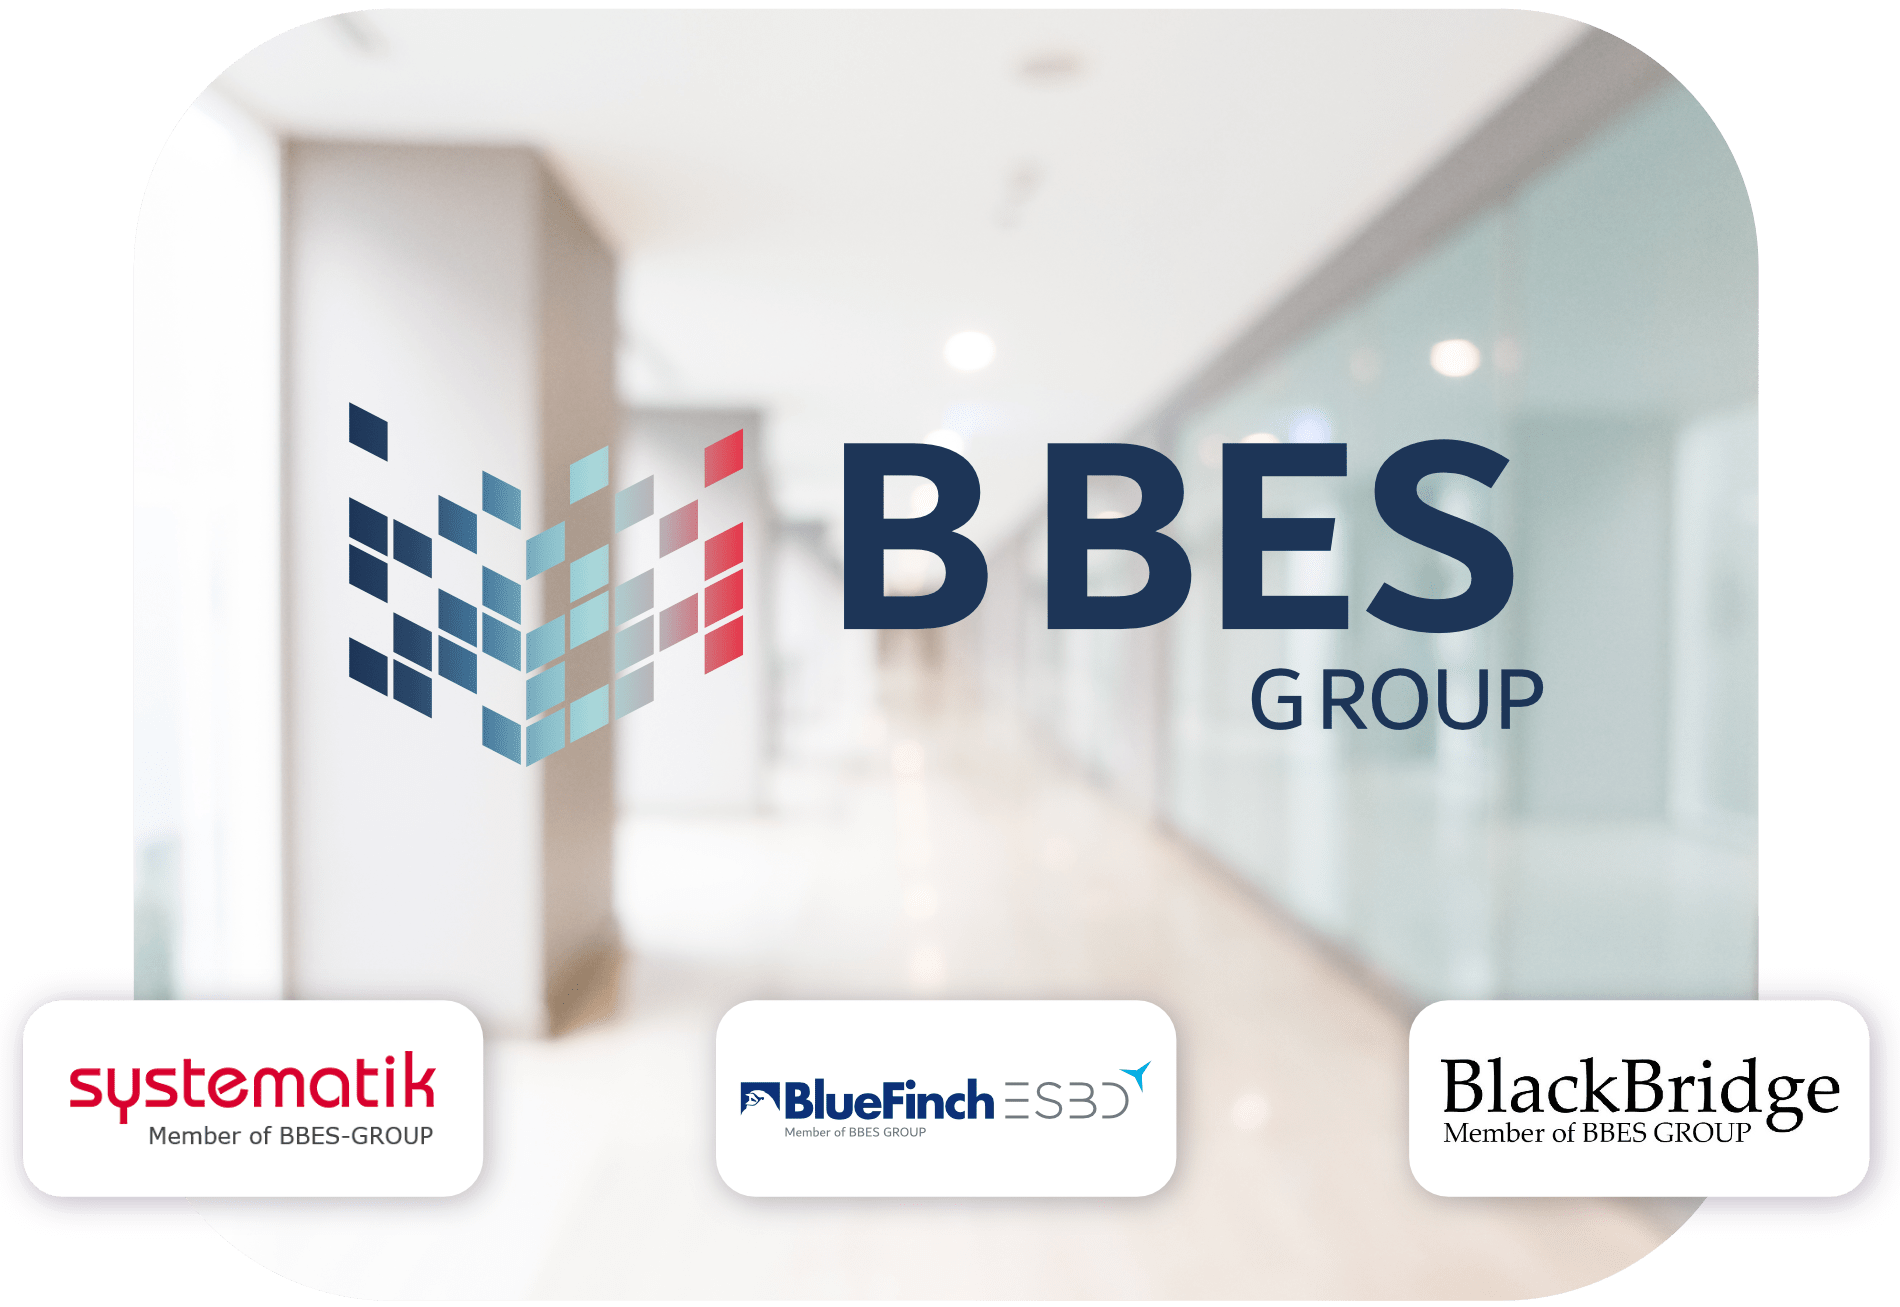 BlueFinch-ESBD - bluefinch-esbd,bbes group,ISO27001